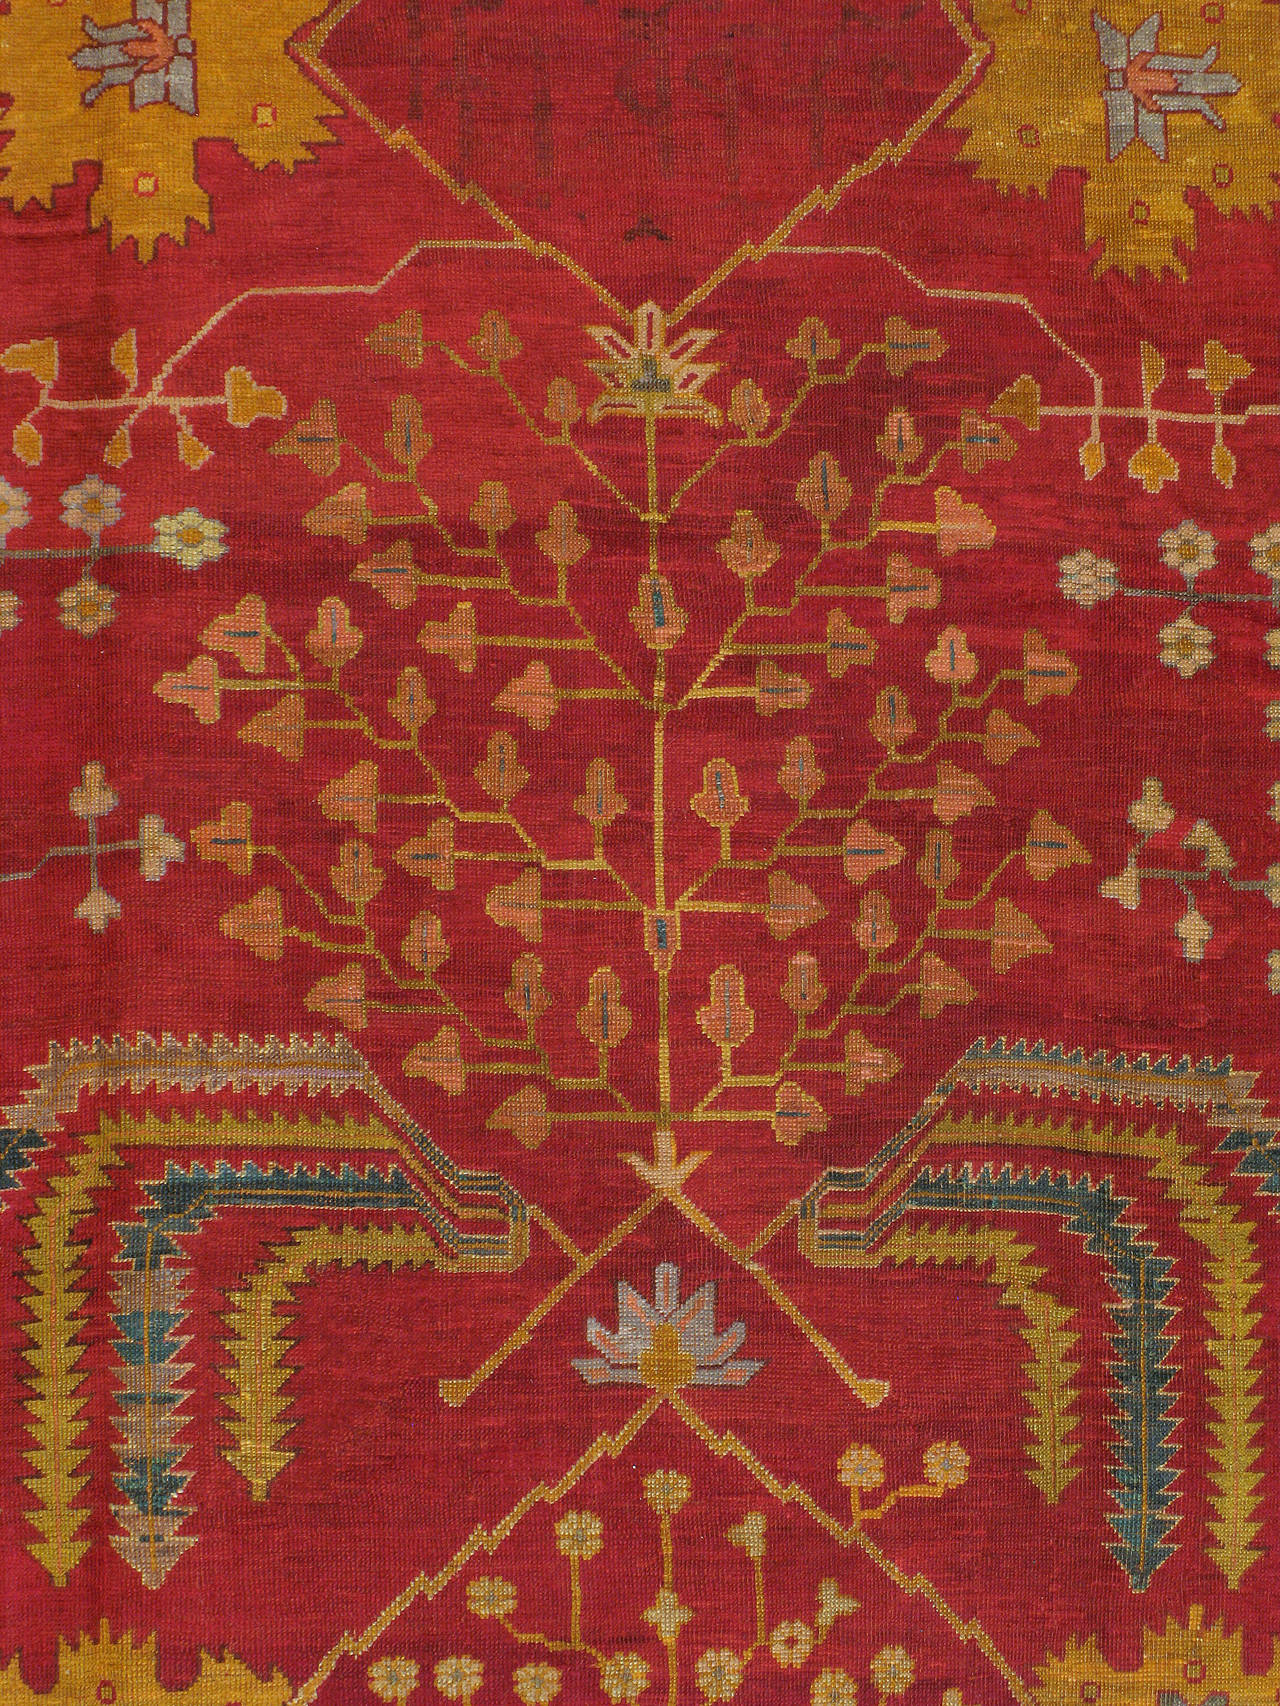 Ein antiker türkischer Oushak-Teppich aus dem ersten Viertel des 20. Jahrhunderts. Eine Goldrutenbordüre umgibt ein karminrotes Feld.